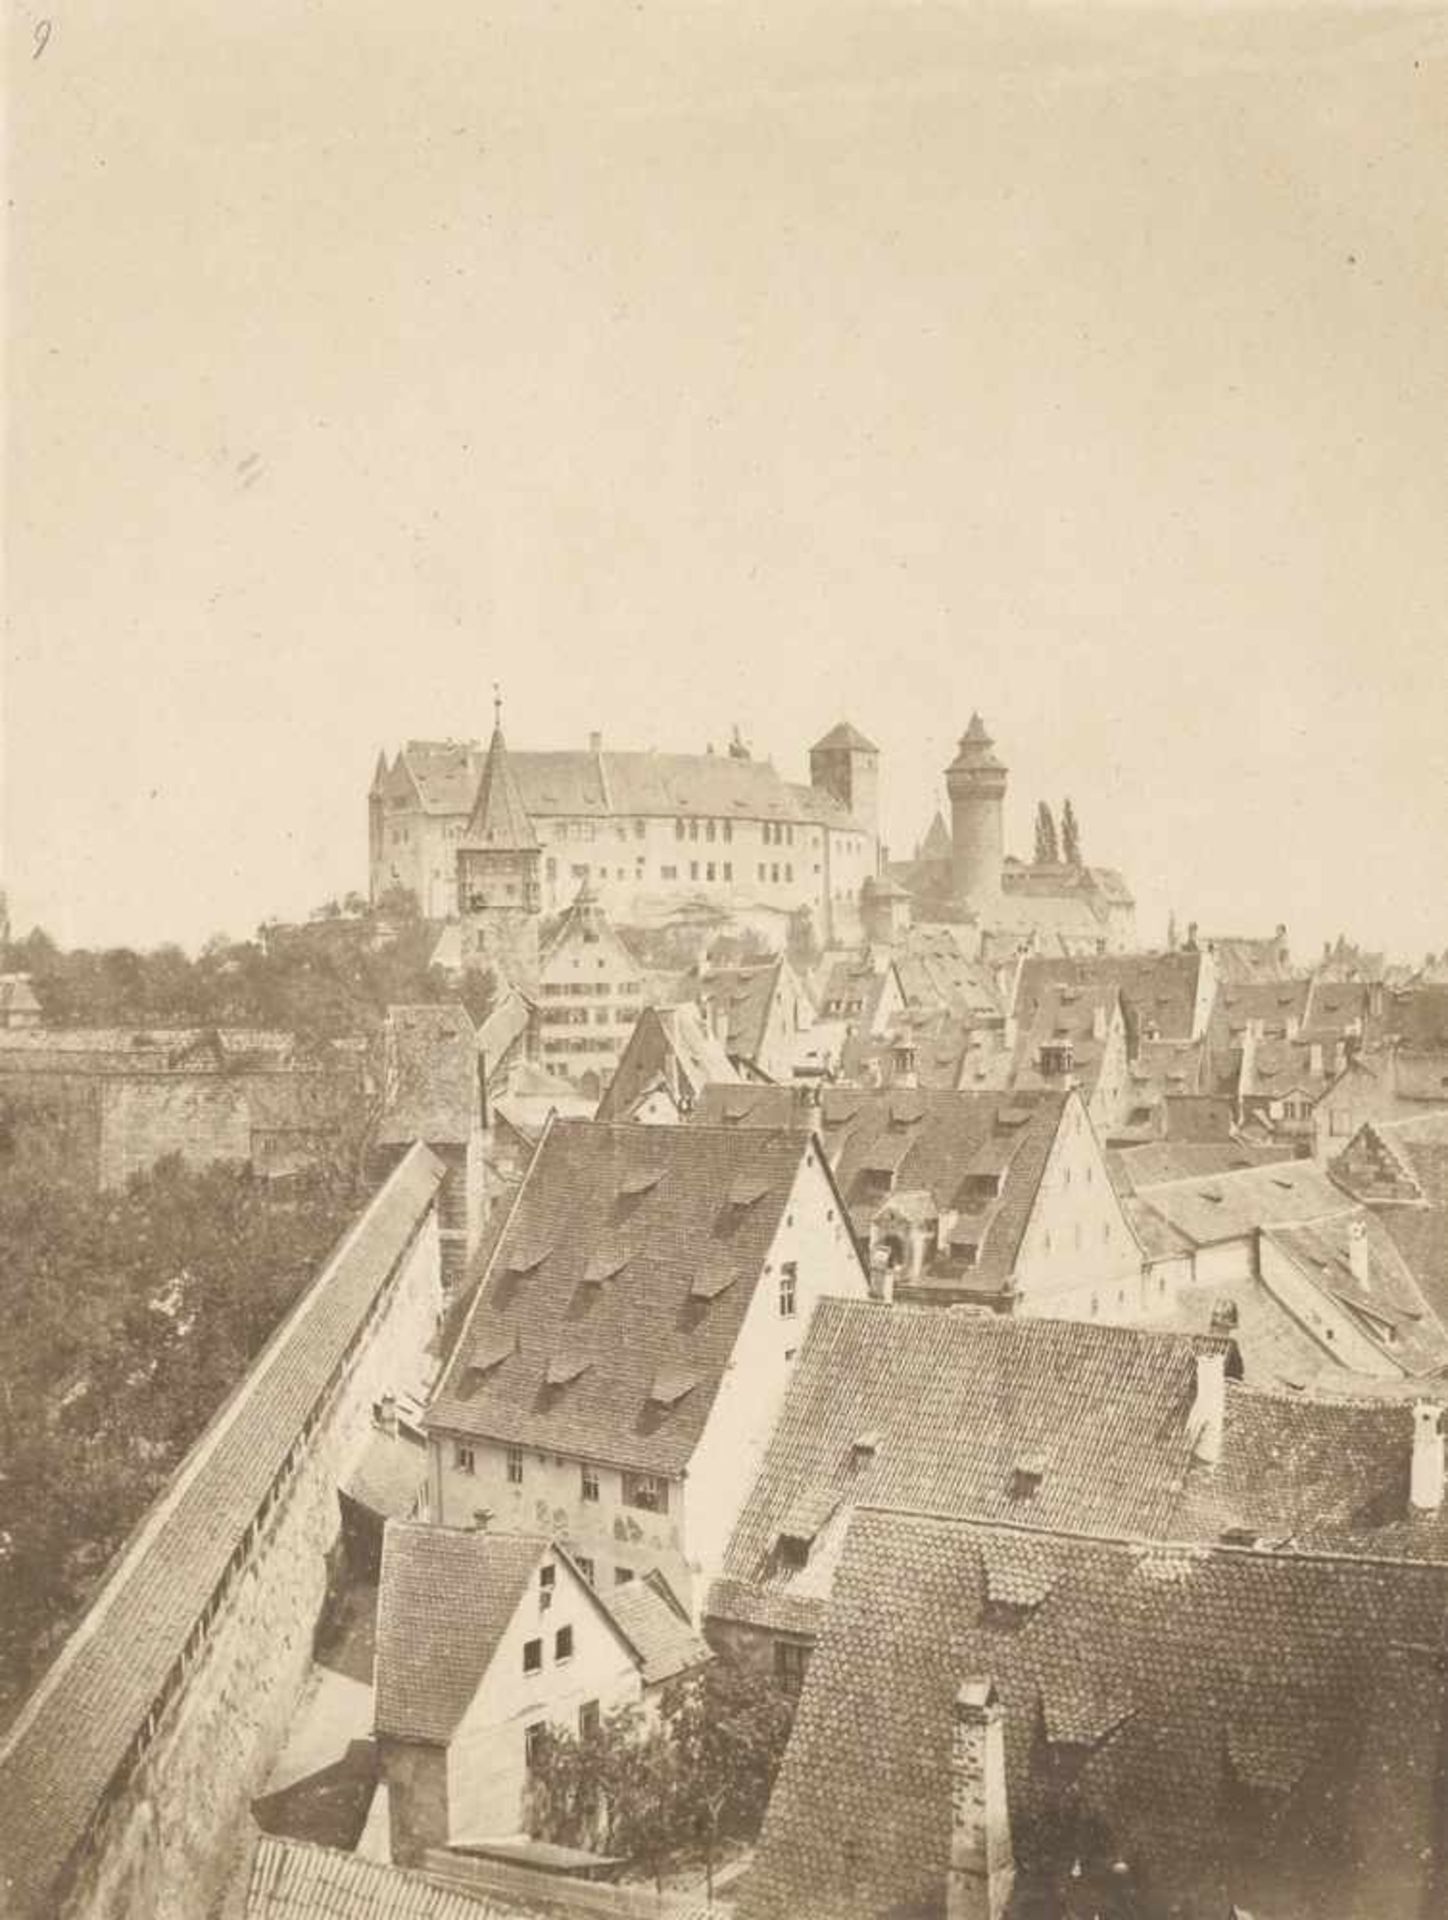 Schmidt, Georg: "Burg von Nürnberg"; "Nassauer Haus, Nürnberg"(Attributed to). "Burg von